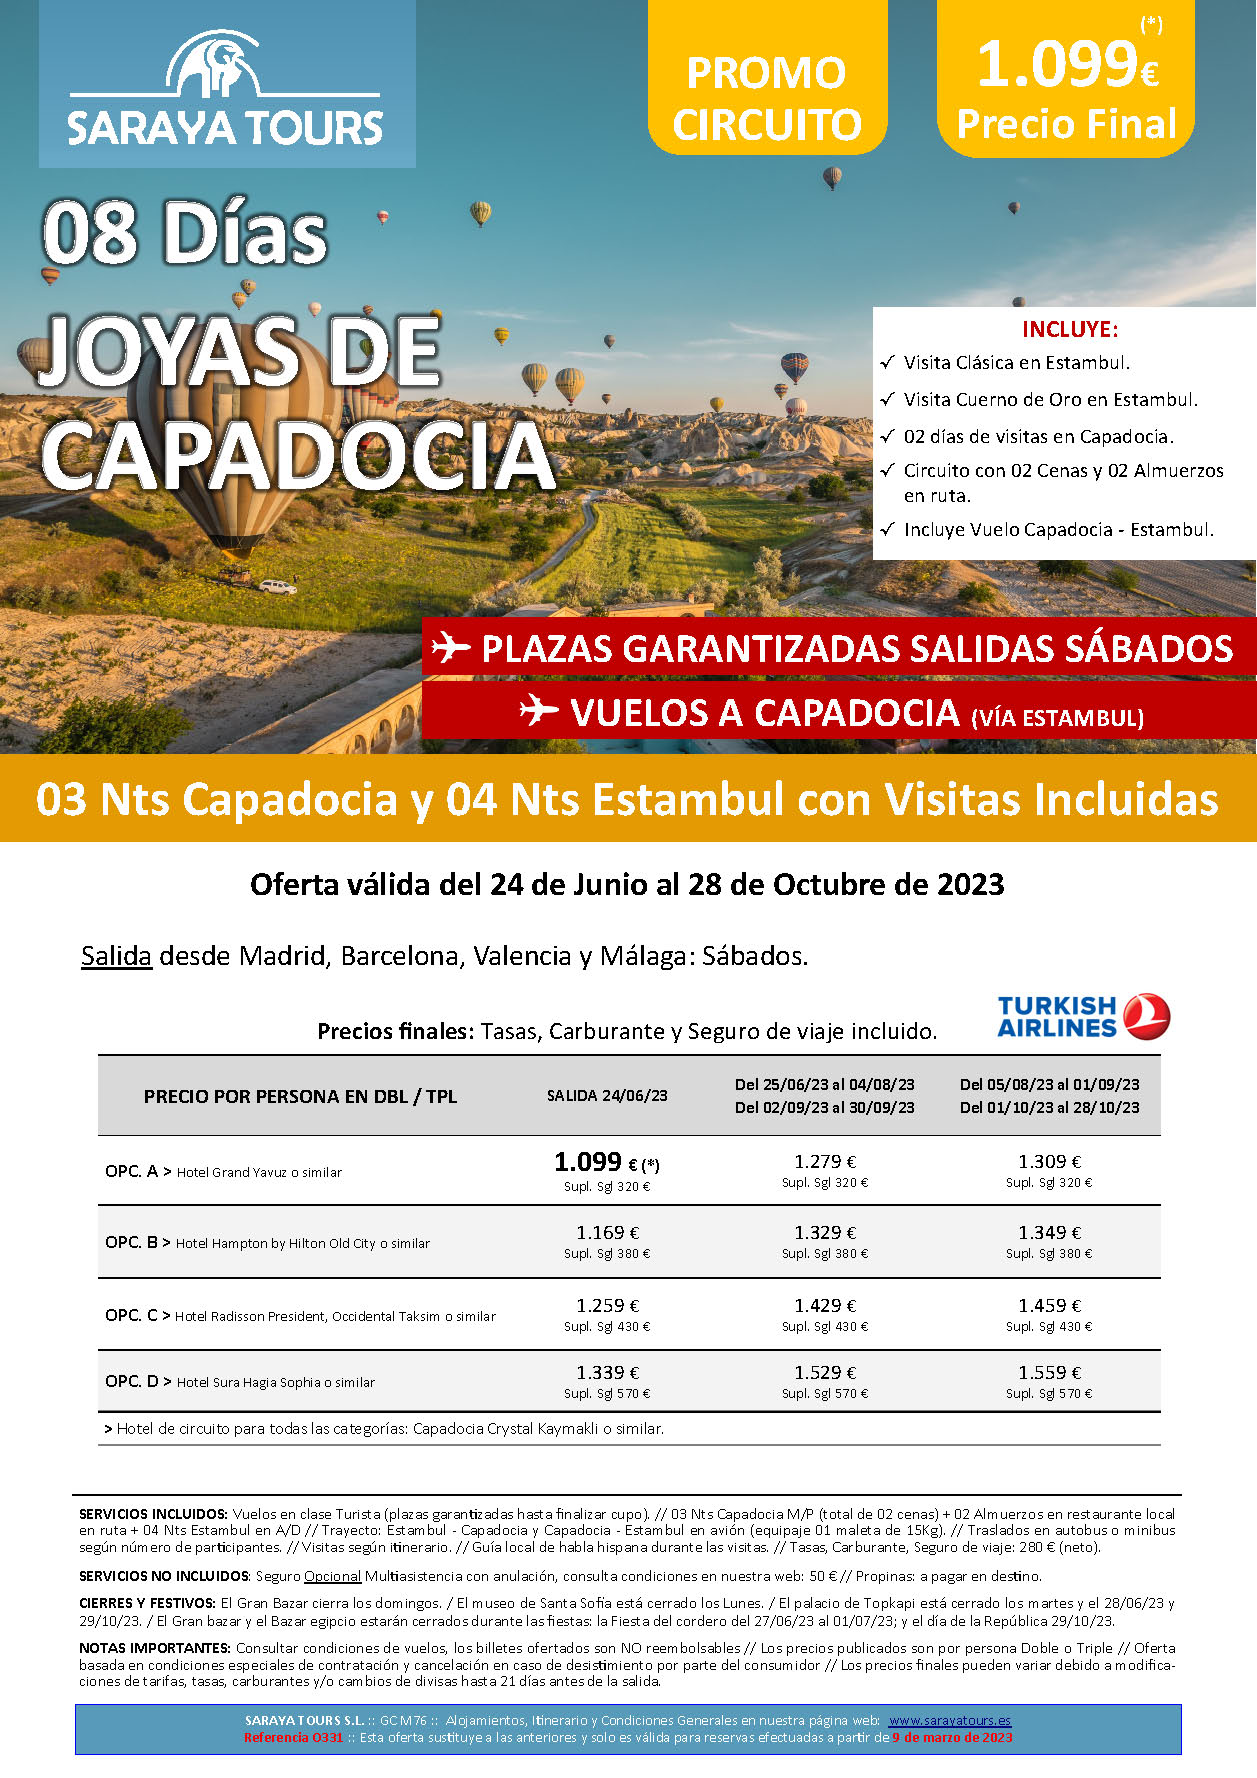 Oferta Saraya Tours Junio a Octubre 2023 Joyas de Capadocia 8 dias salidas desde Madrid Barcelona Valencia y Malaga vuelos Turkish Airlines